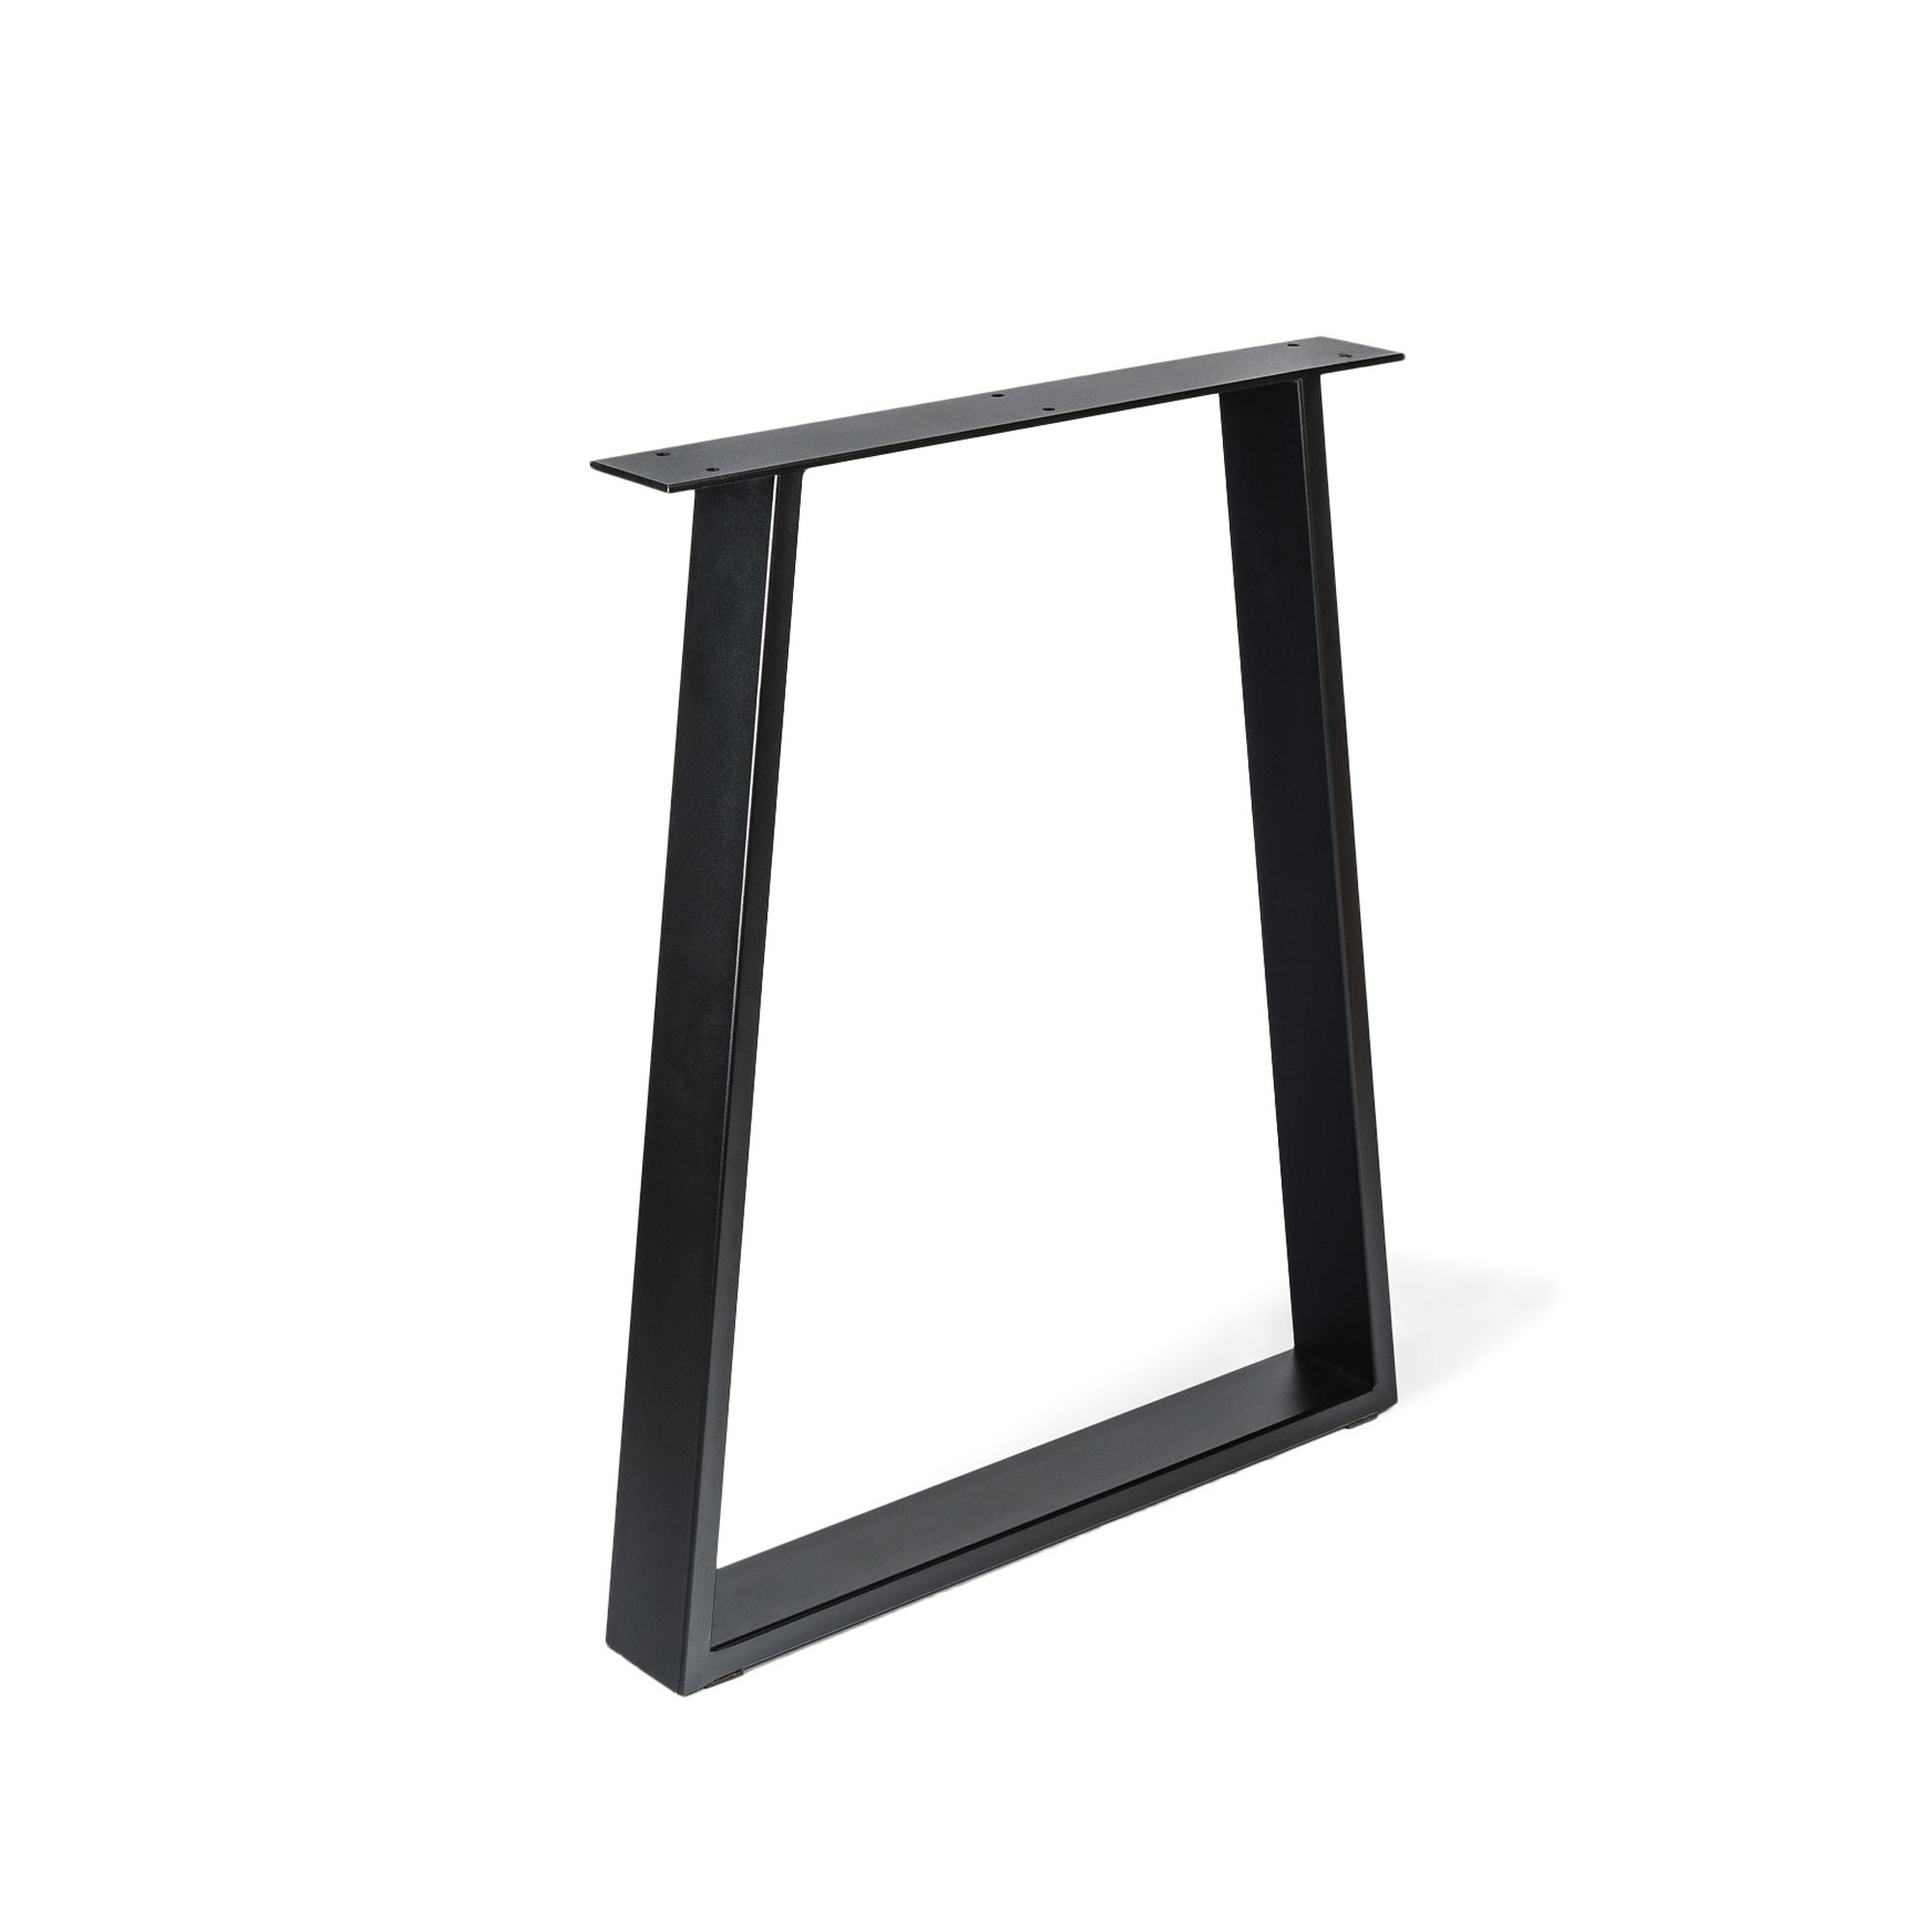 Pied trapèze pour meuble en acier Finition pores noirs | Dimensions 580*80*712mm | Hauteur : 71,2 cm | 1 unité